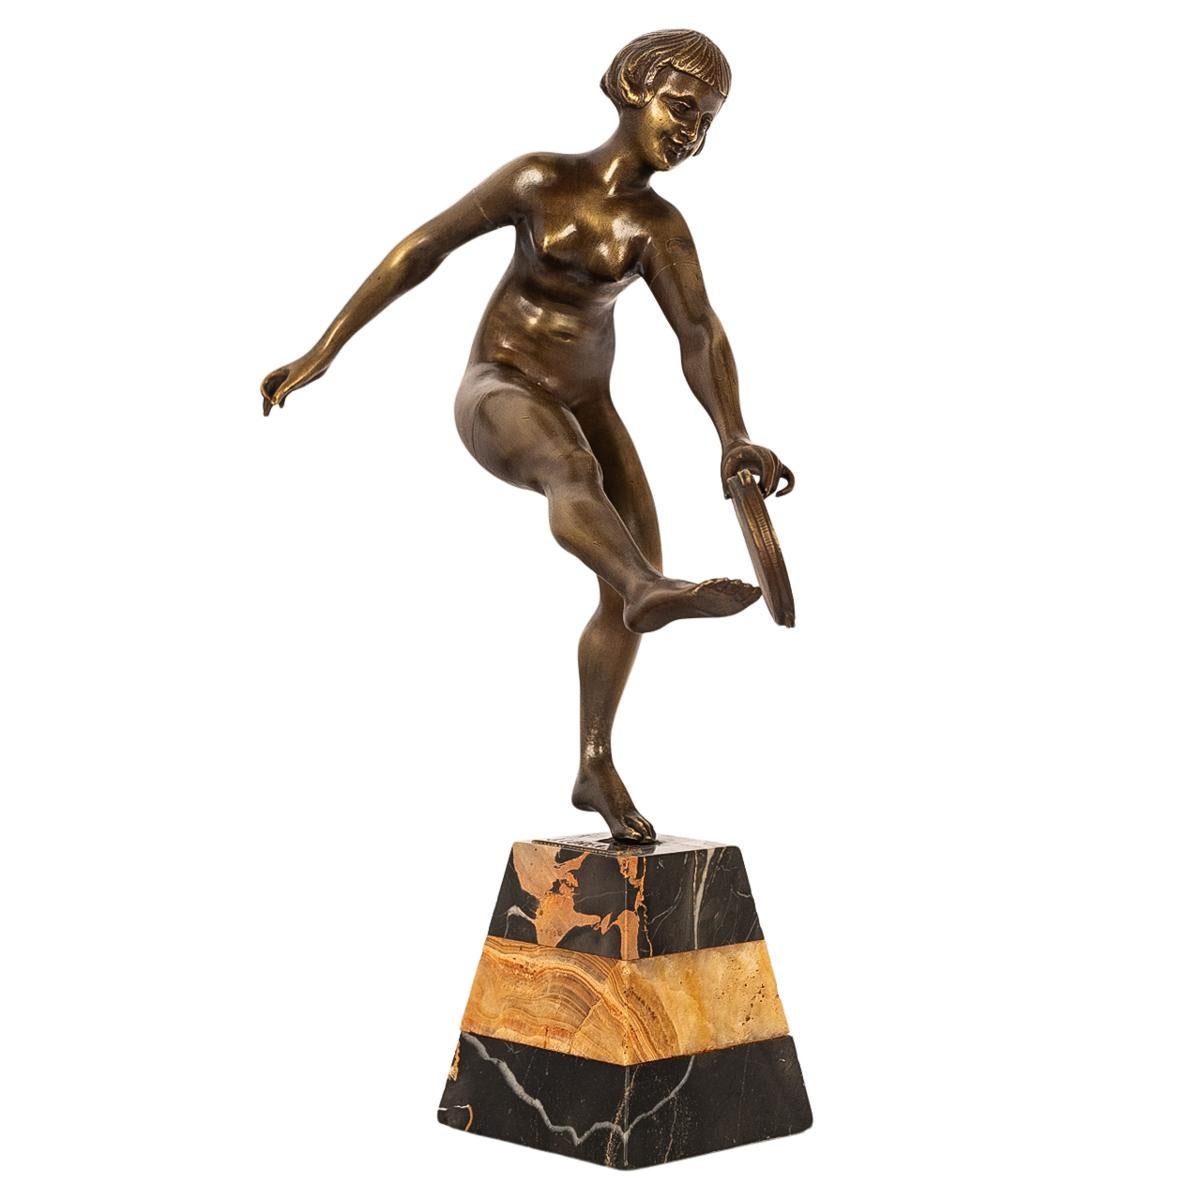 Une très élégante sculpture ancienne en bronze Art déco, statue de Josef Lorenzl, Autriche, 1925.
Cette magnifique sculpture en bronze représente une belle jeune femme, modélisée comme une danseuse de tambourin nue, tenant un tambourin de la main